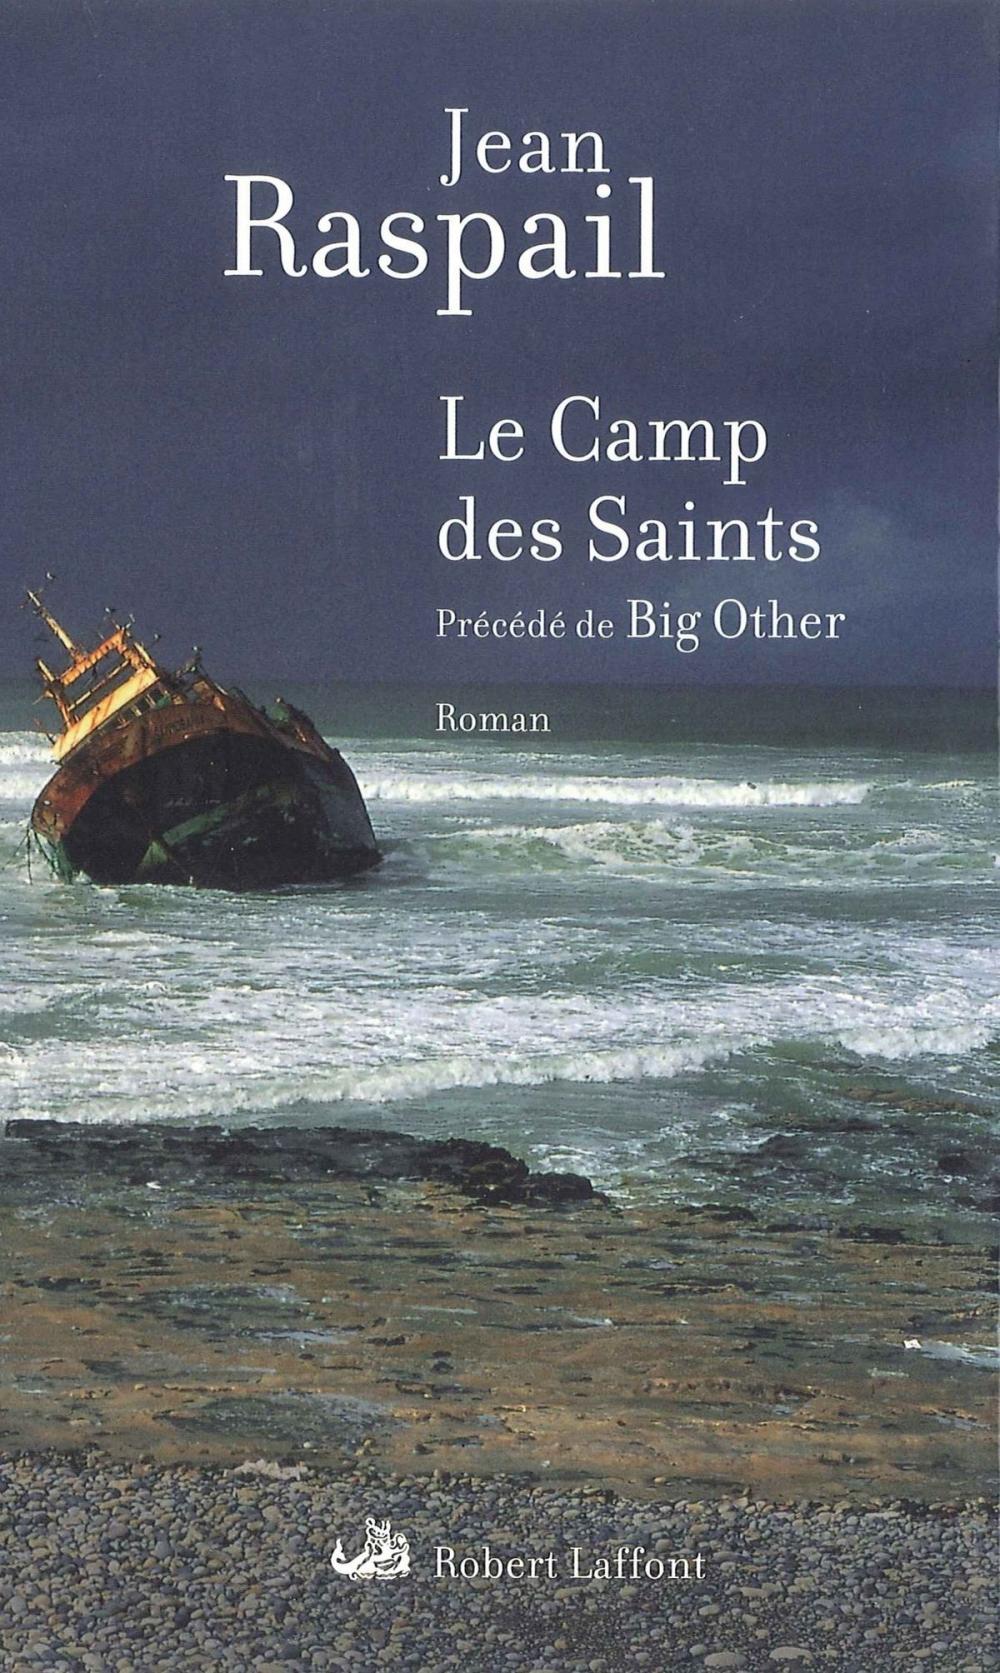 Big bigCover of Le Camp des saints